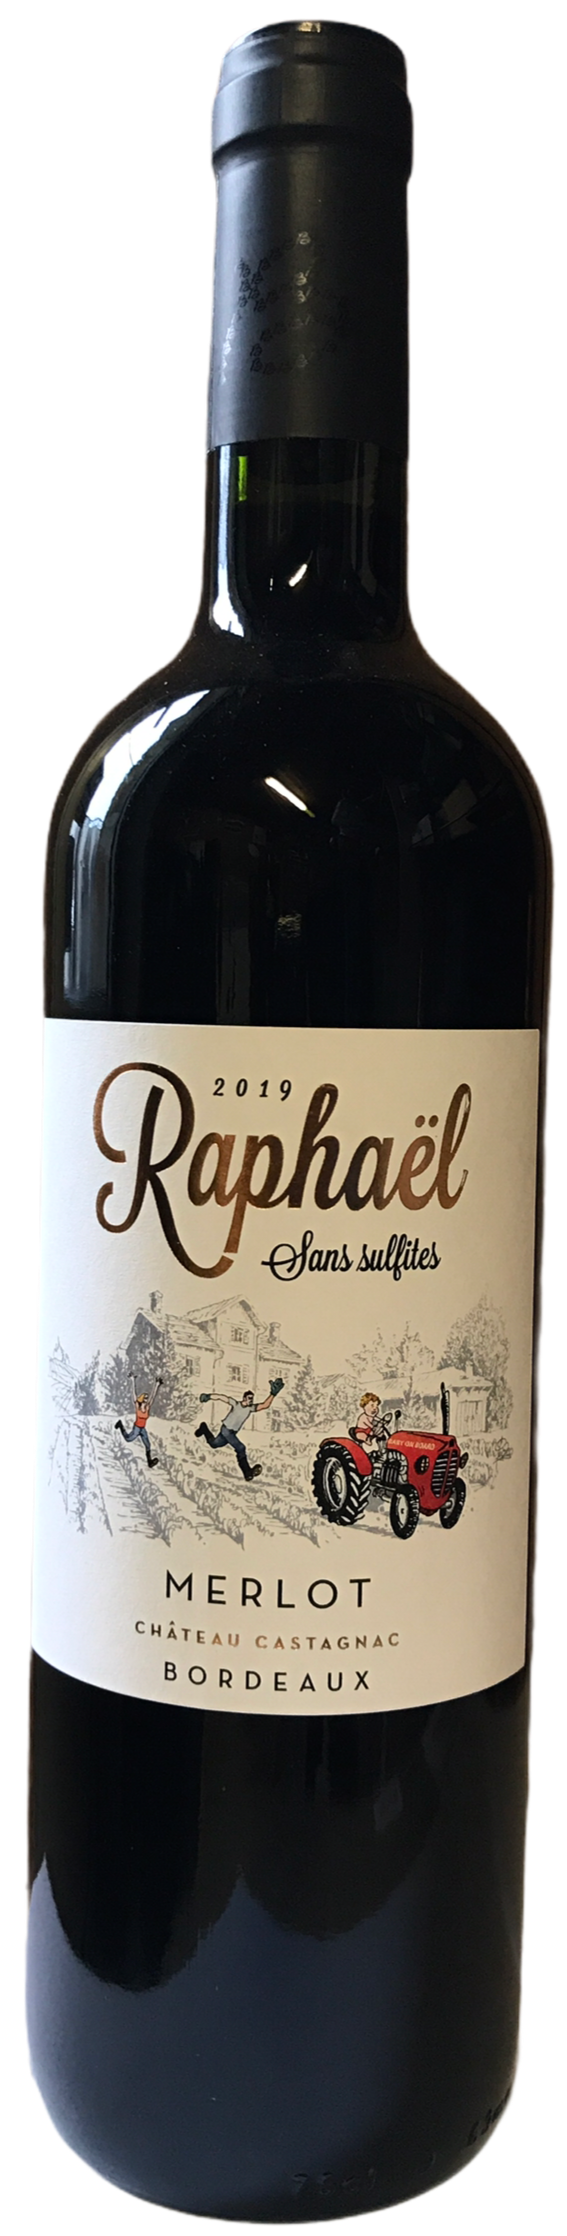 Raphael - AOC Bordeaux 2019 - Sulfite free - Alcohol degree 13.5 - 75cl